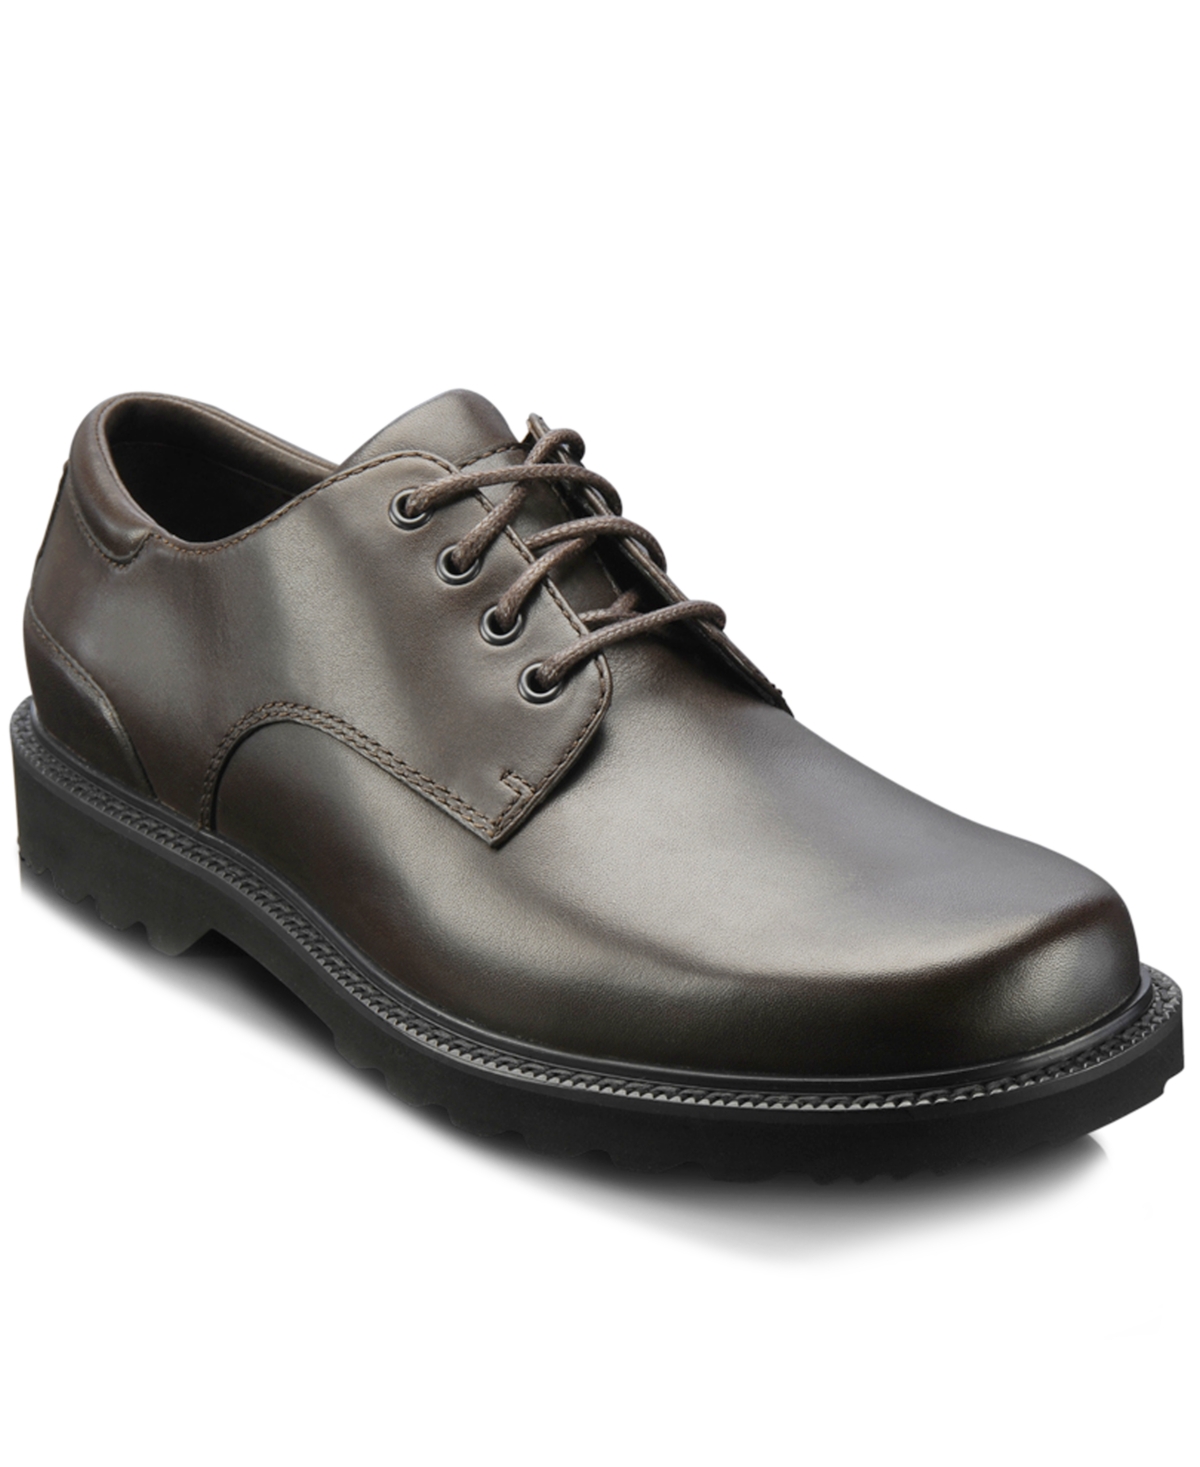 Men's Northfield Water-Resistance Shoes - Dark Brown